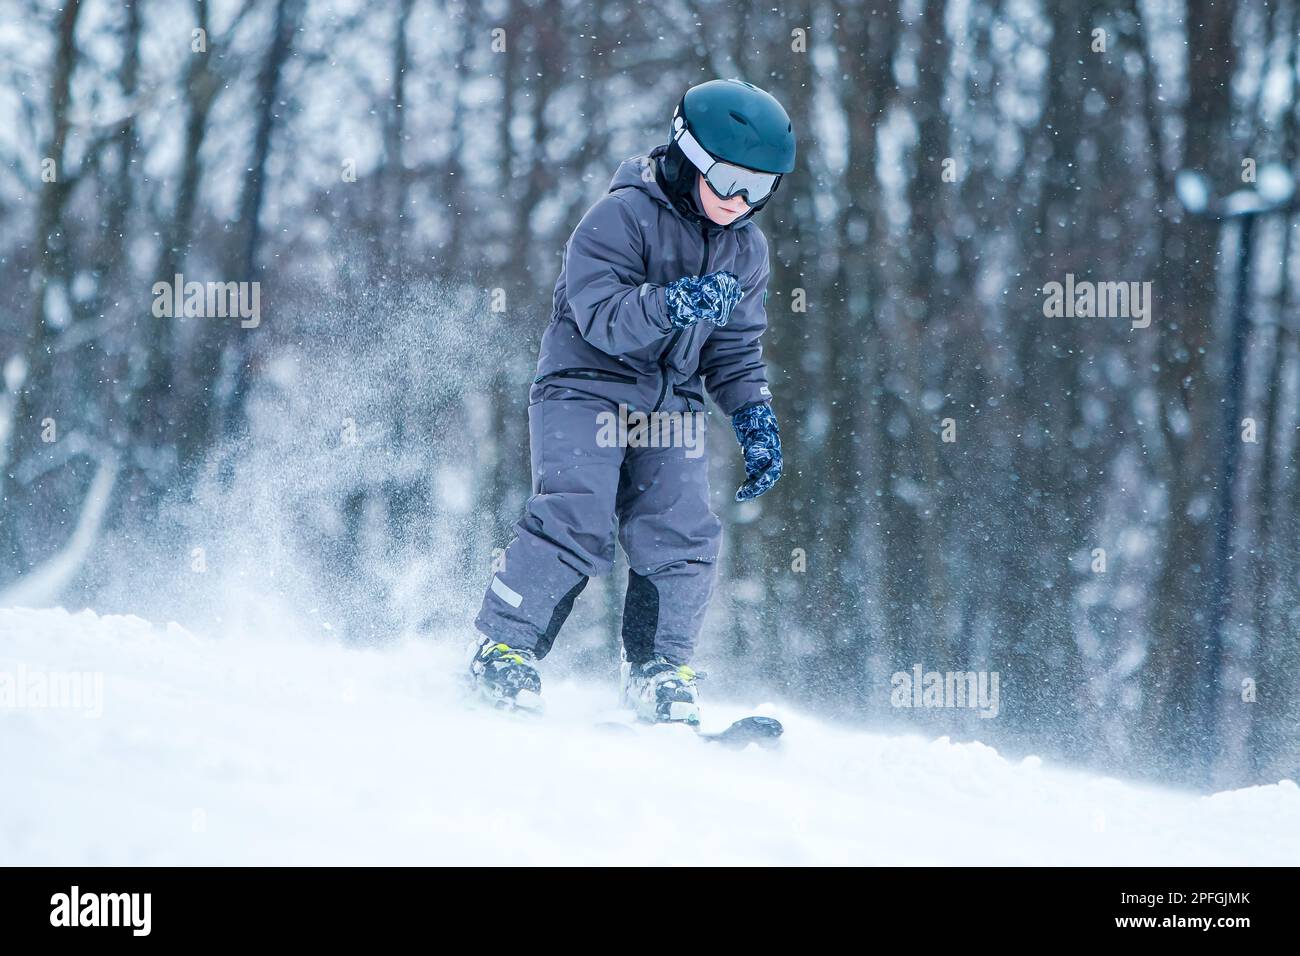 Petit skieur en descente avec des éclaboussures de neige. Ski enfant en montagne. Adolescent actif avec un casque de sécurité, des lunettes et des bâtons de ski Banque D'Images